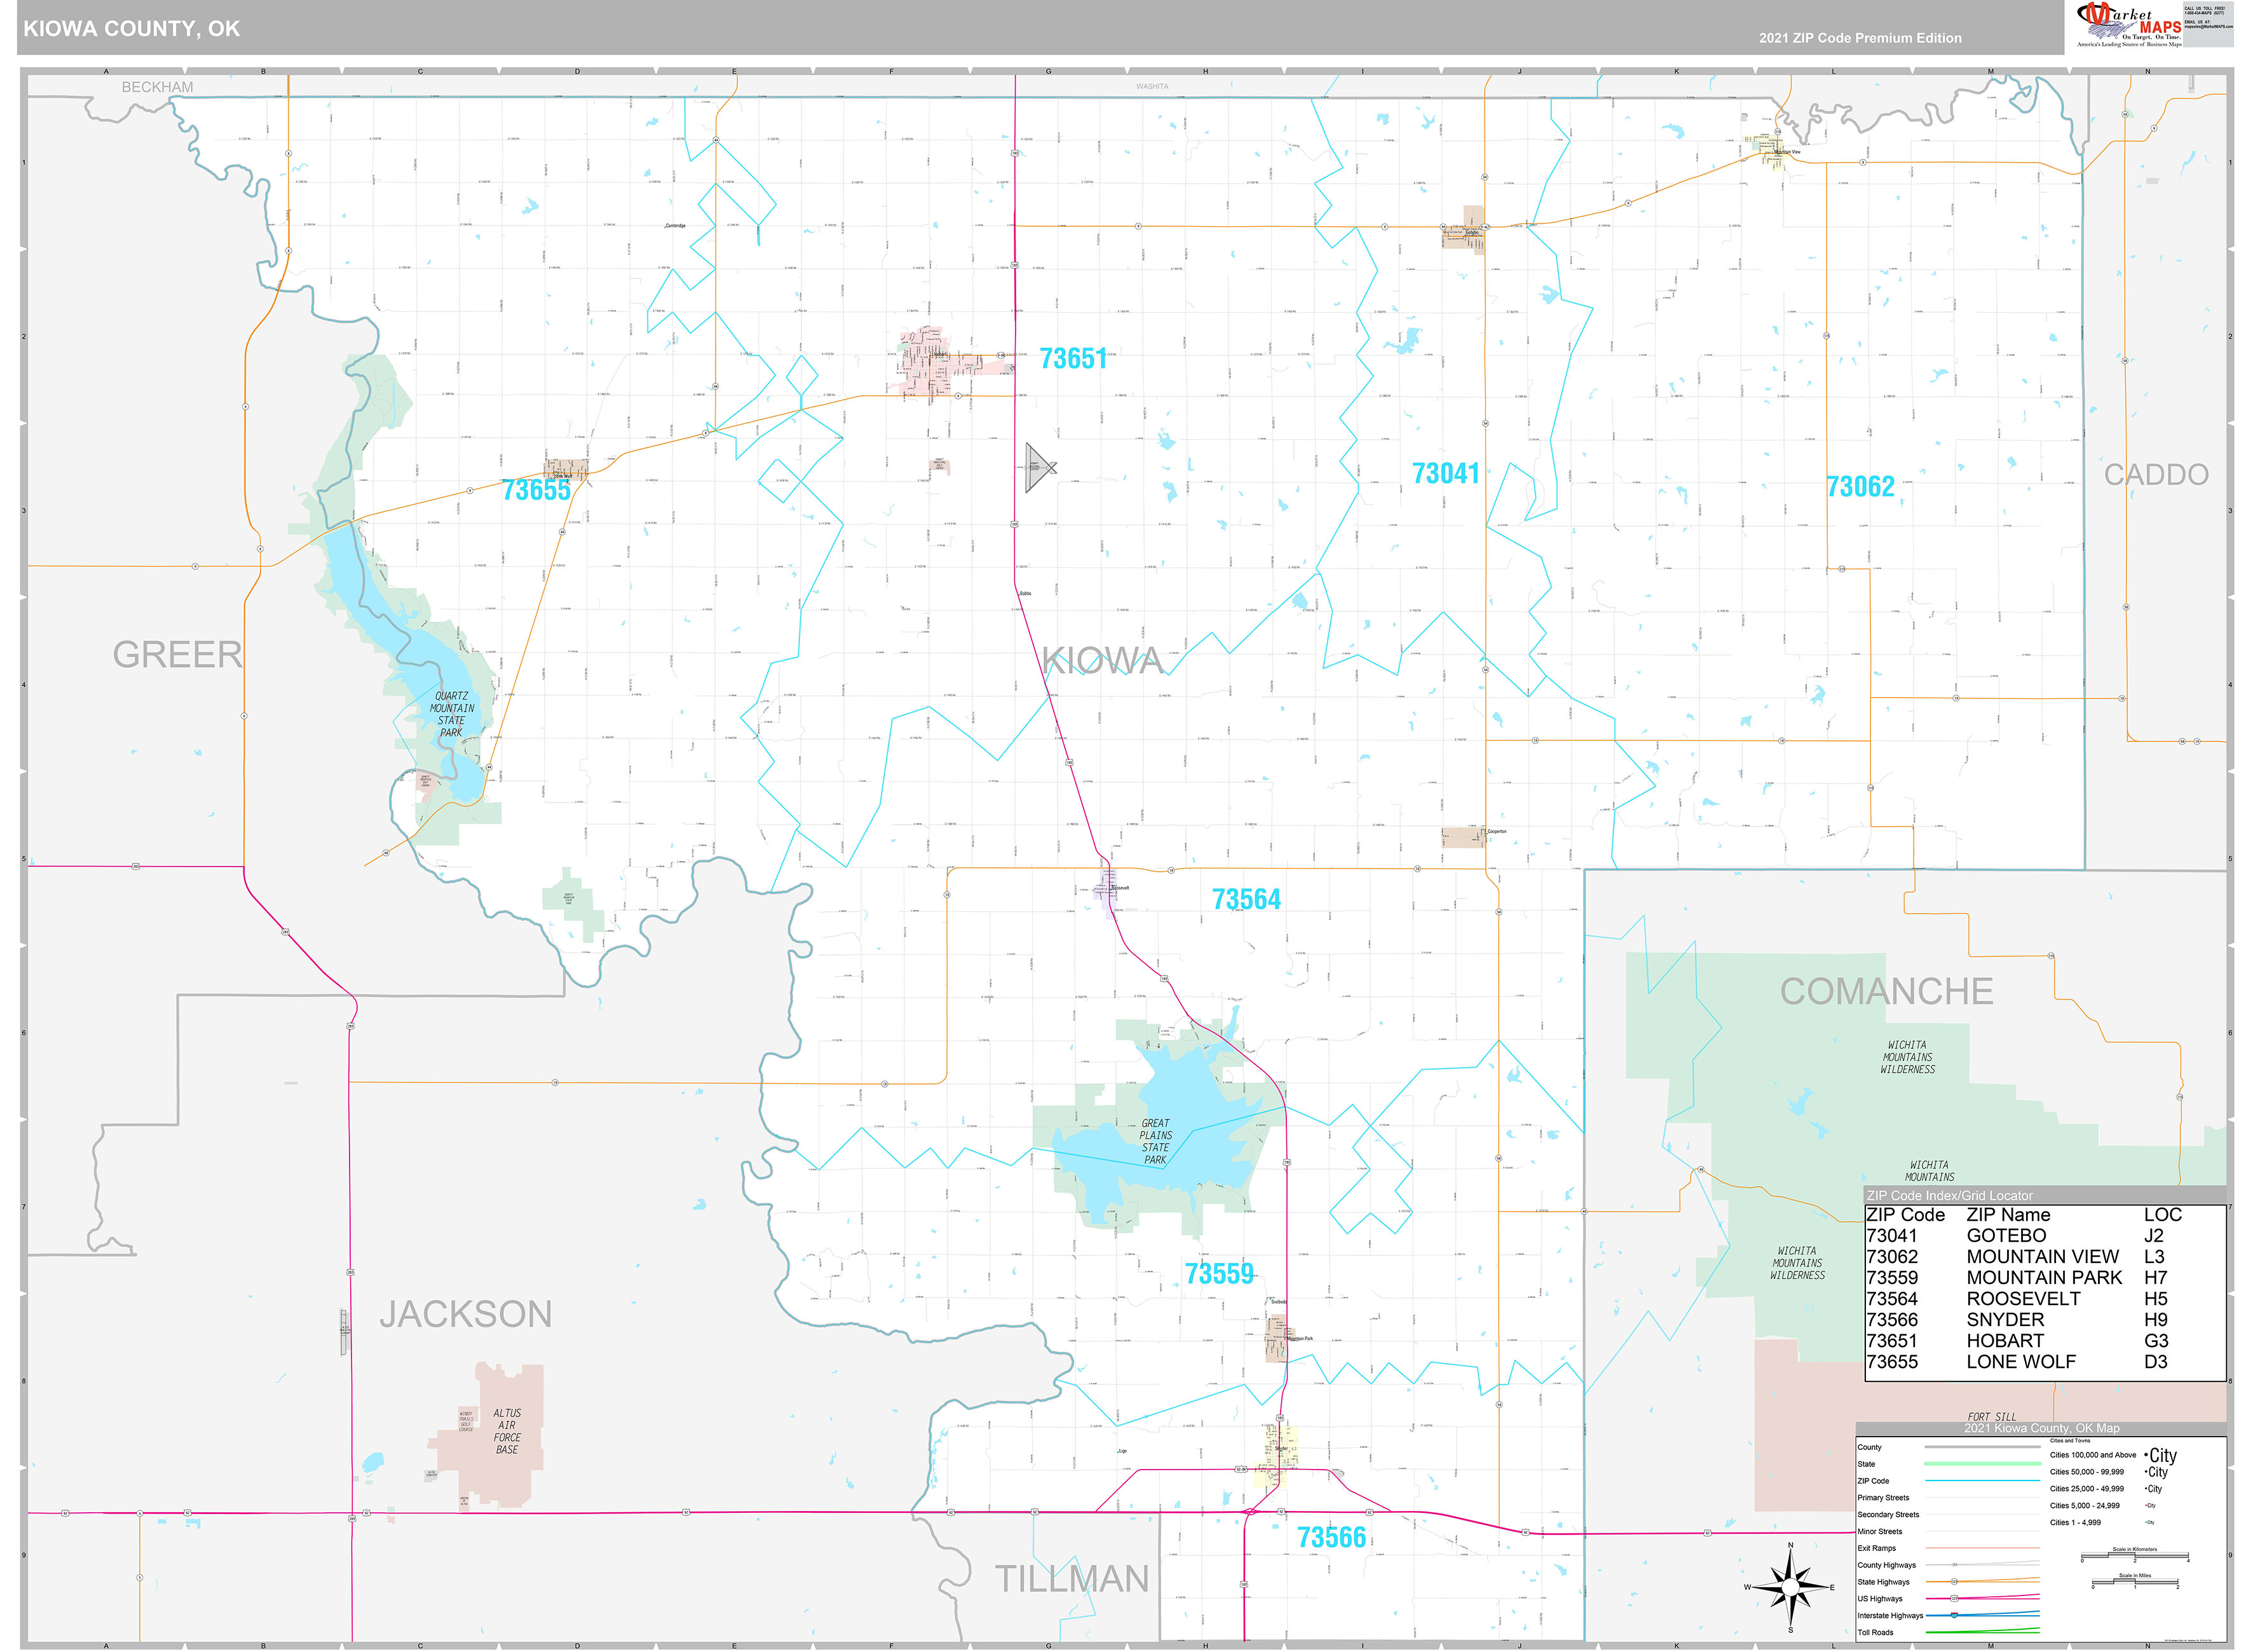 Kiowa County, OK Wall Map Premium Style by MarketMAPS - MapSales.com